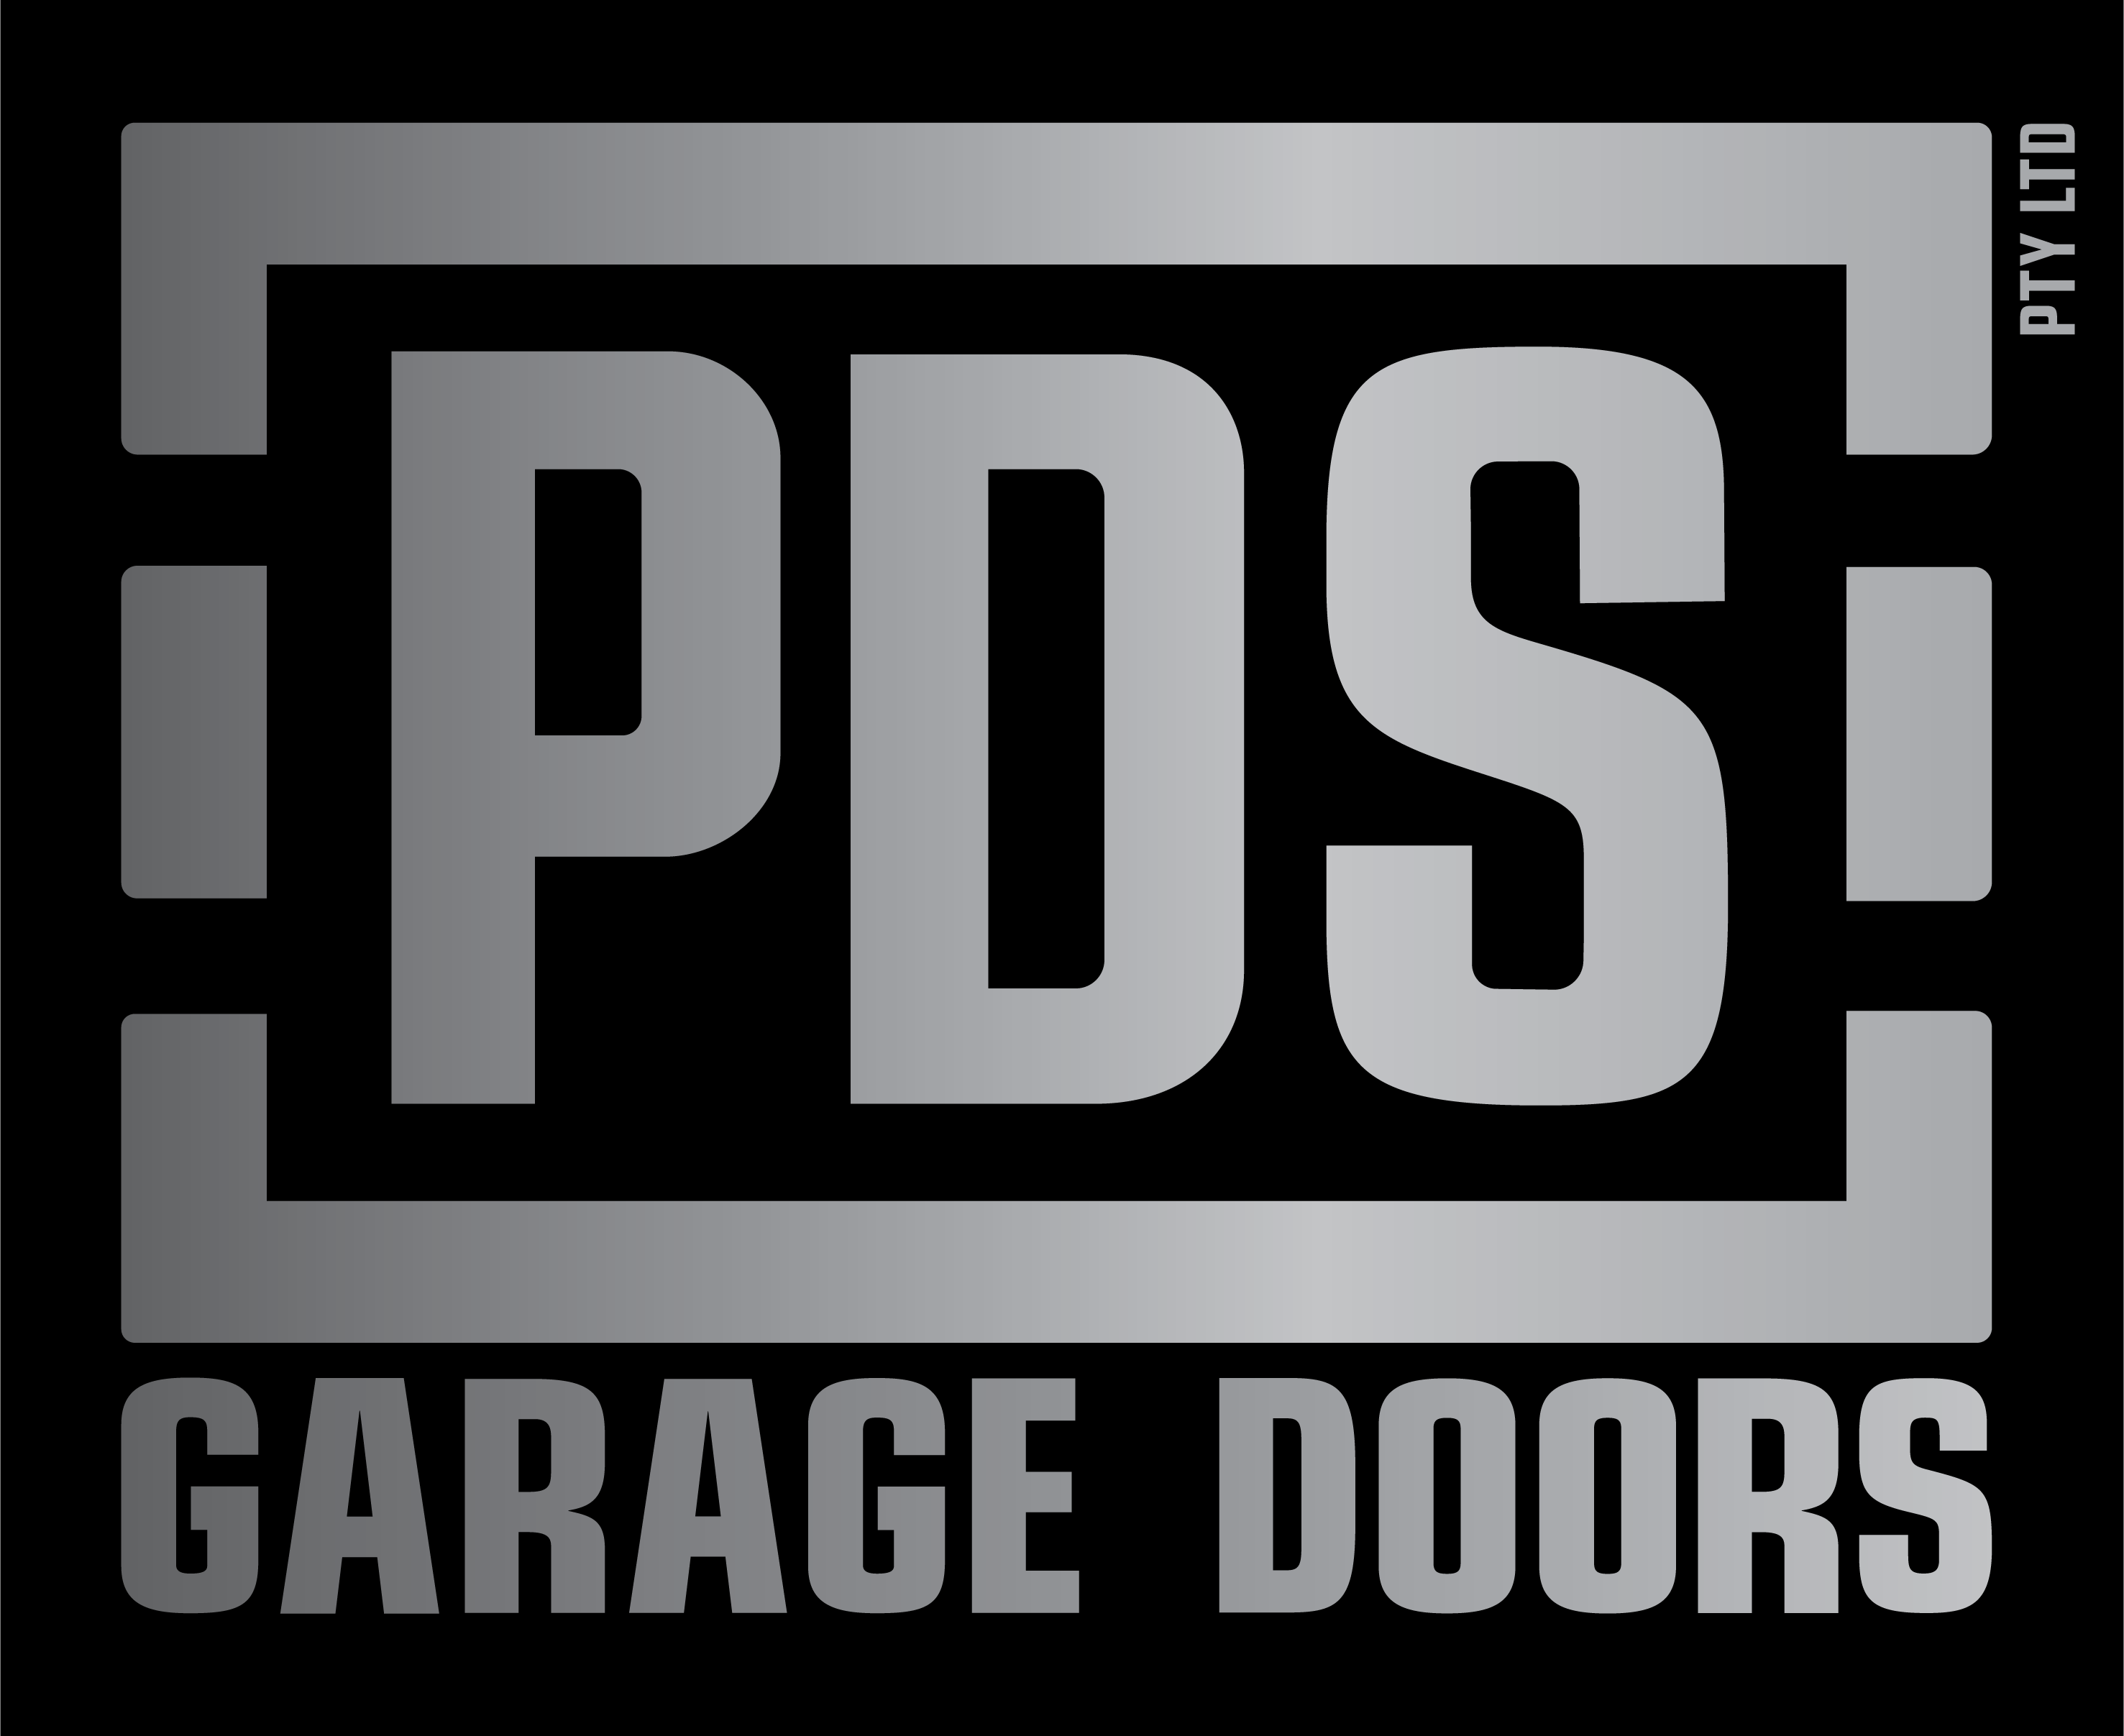 PDS Garage Doors